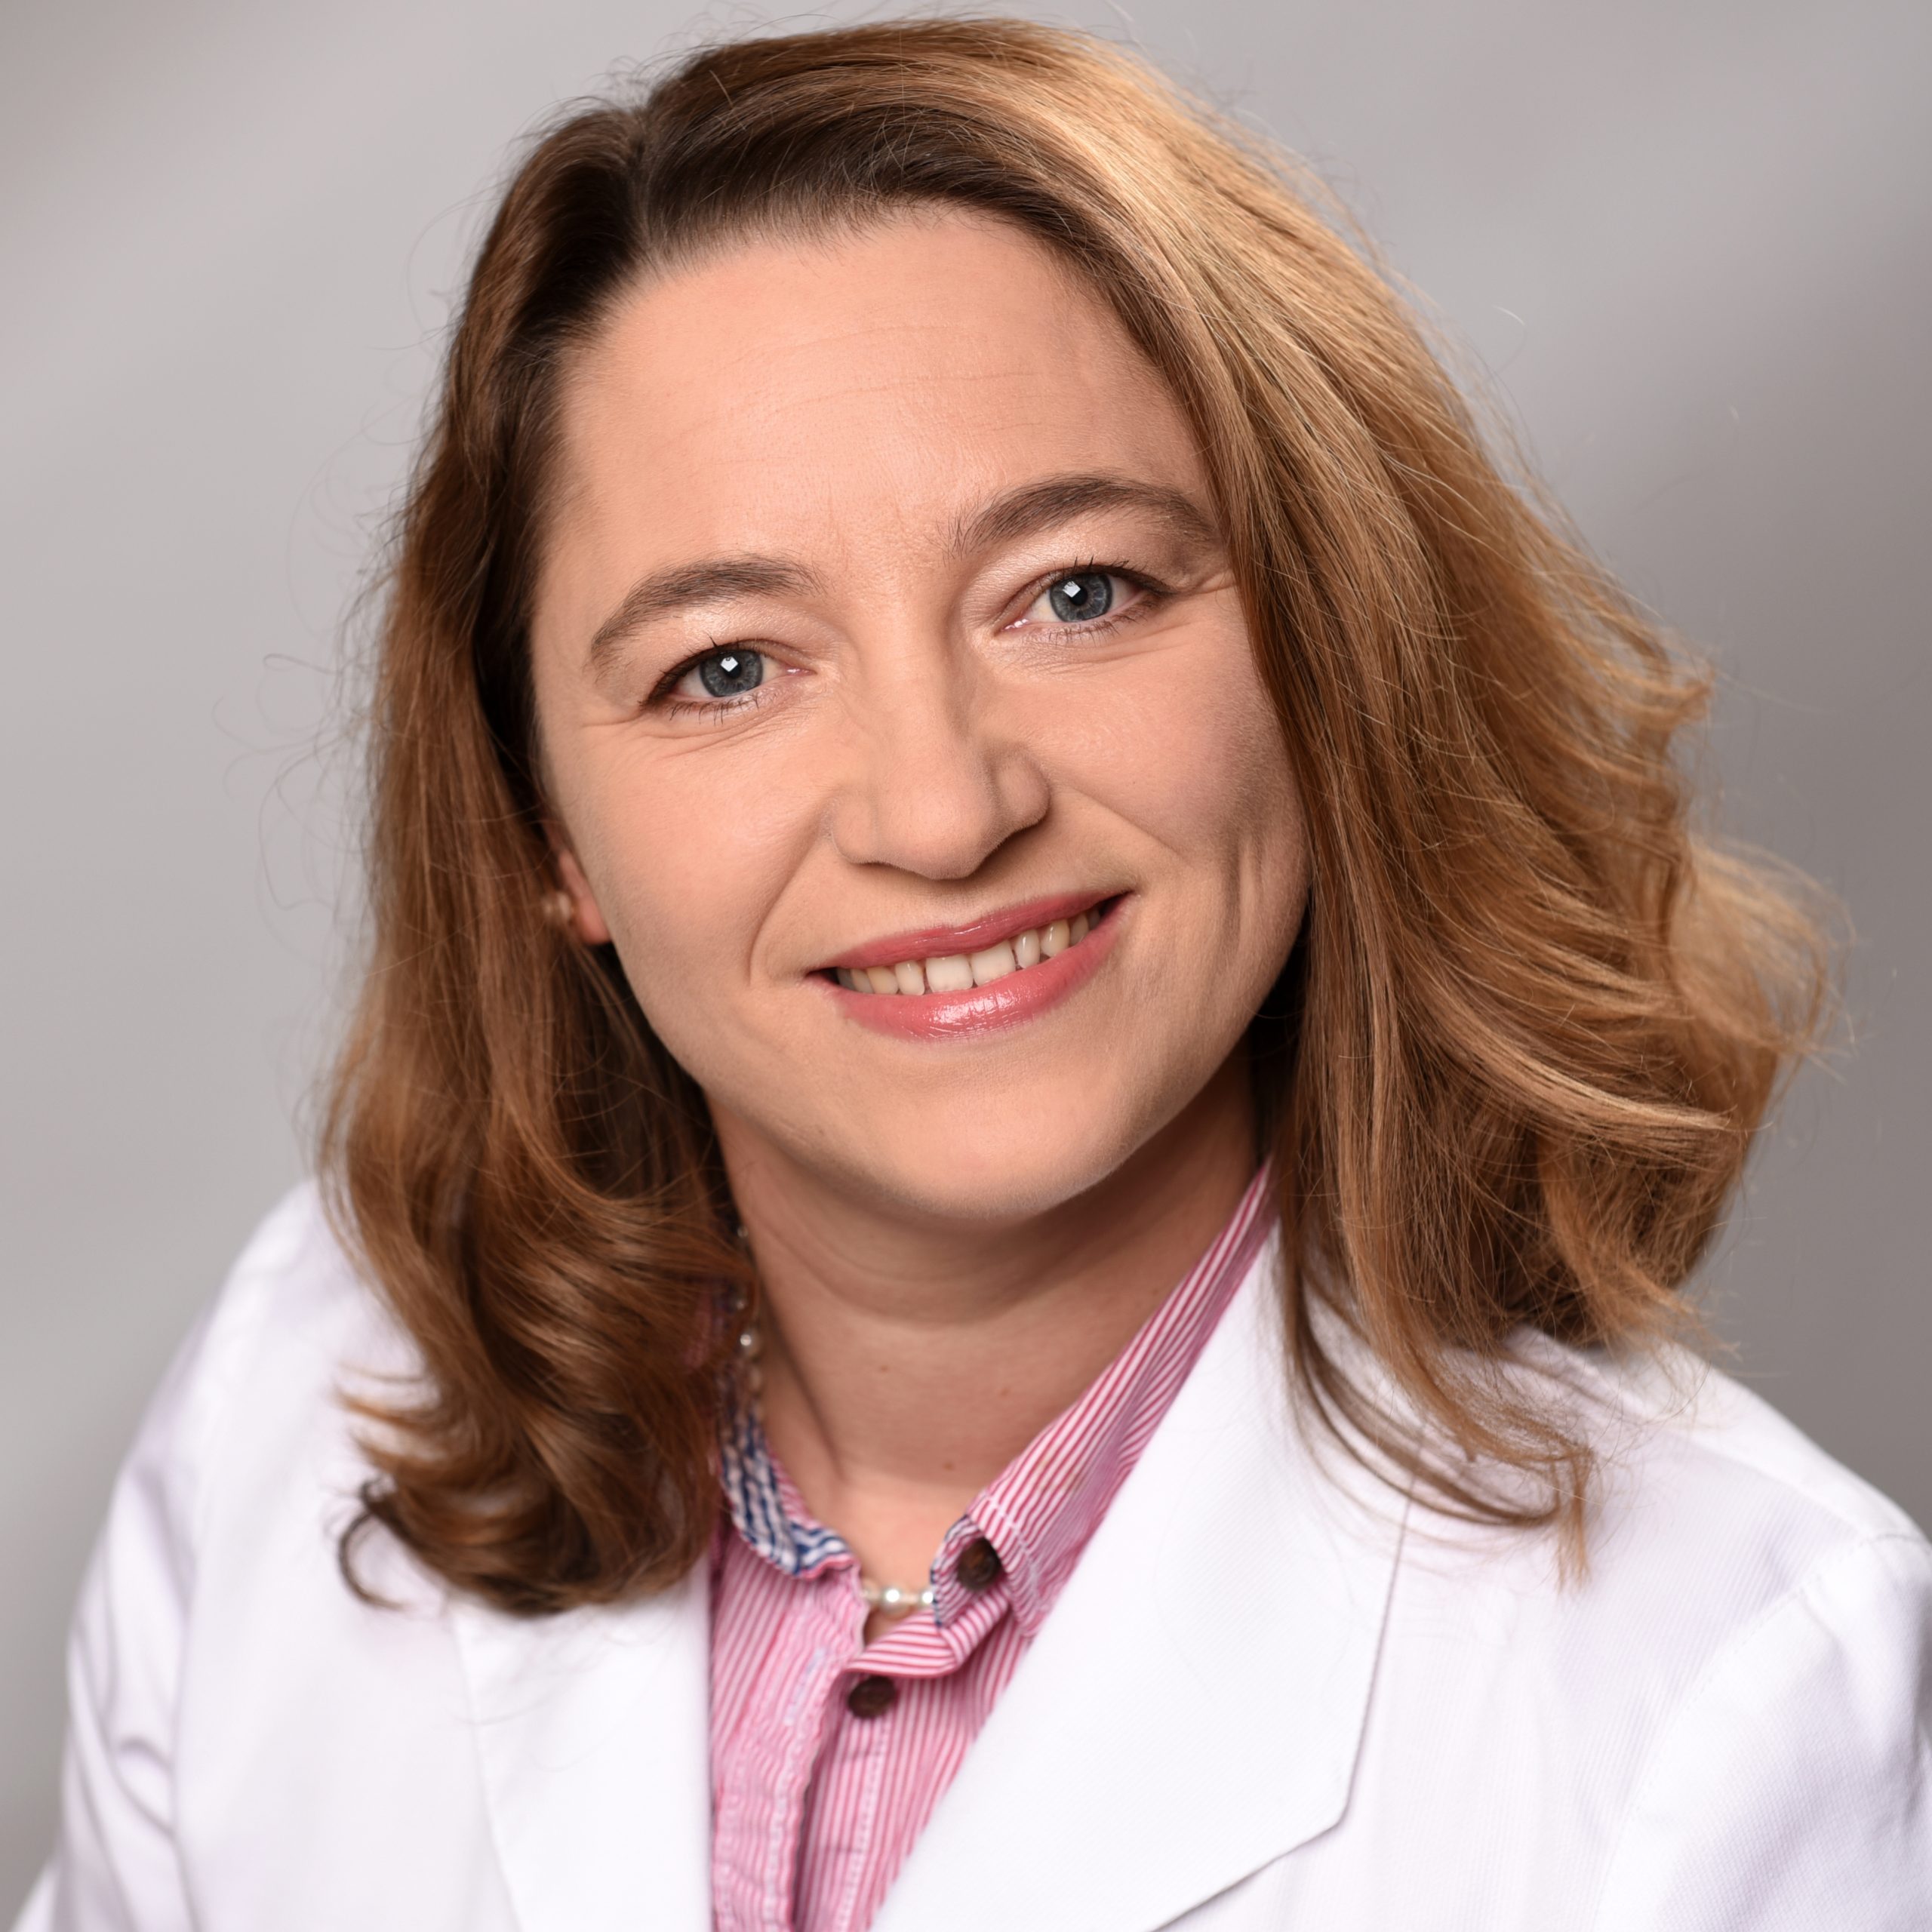 Dr. Doreen Heymann